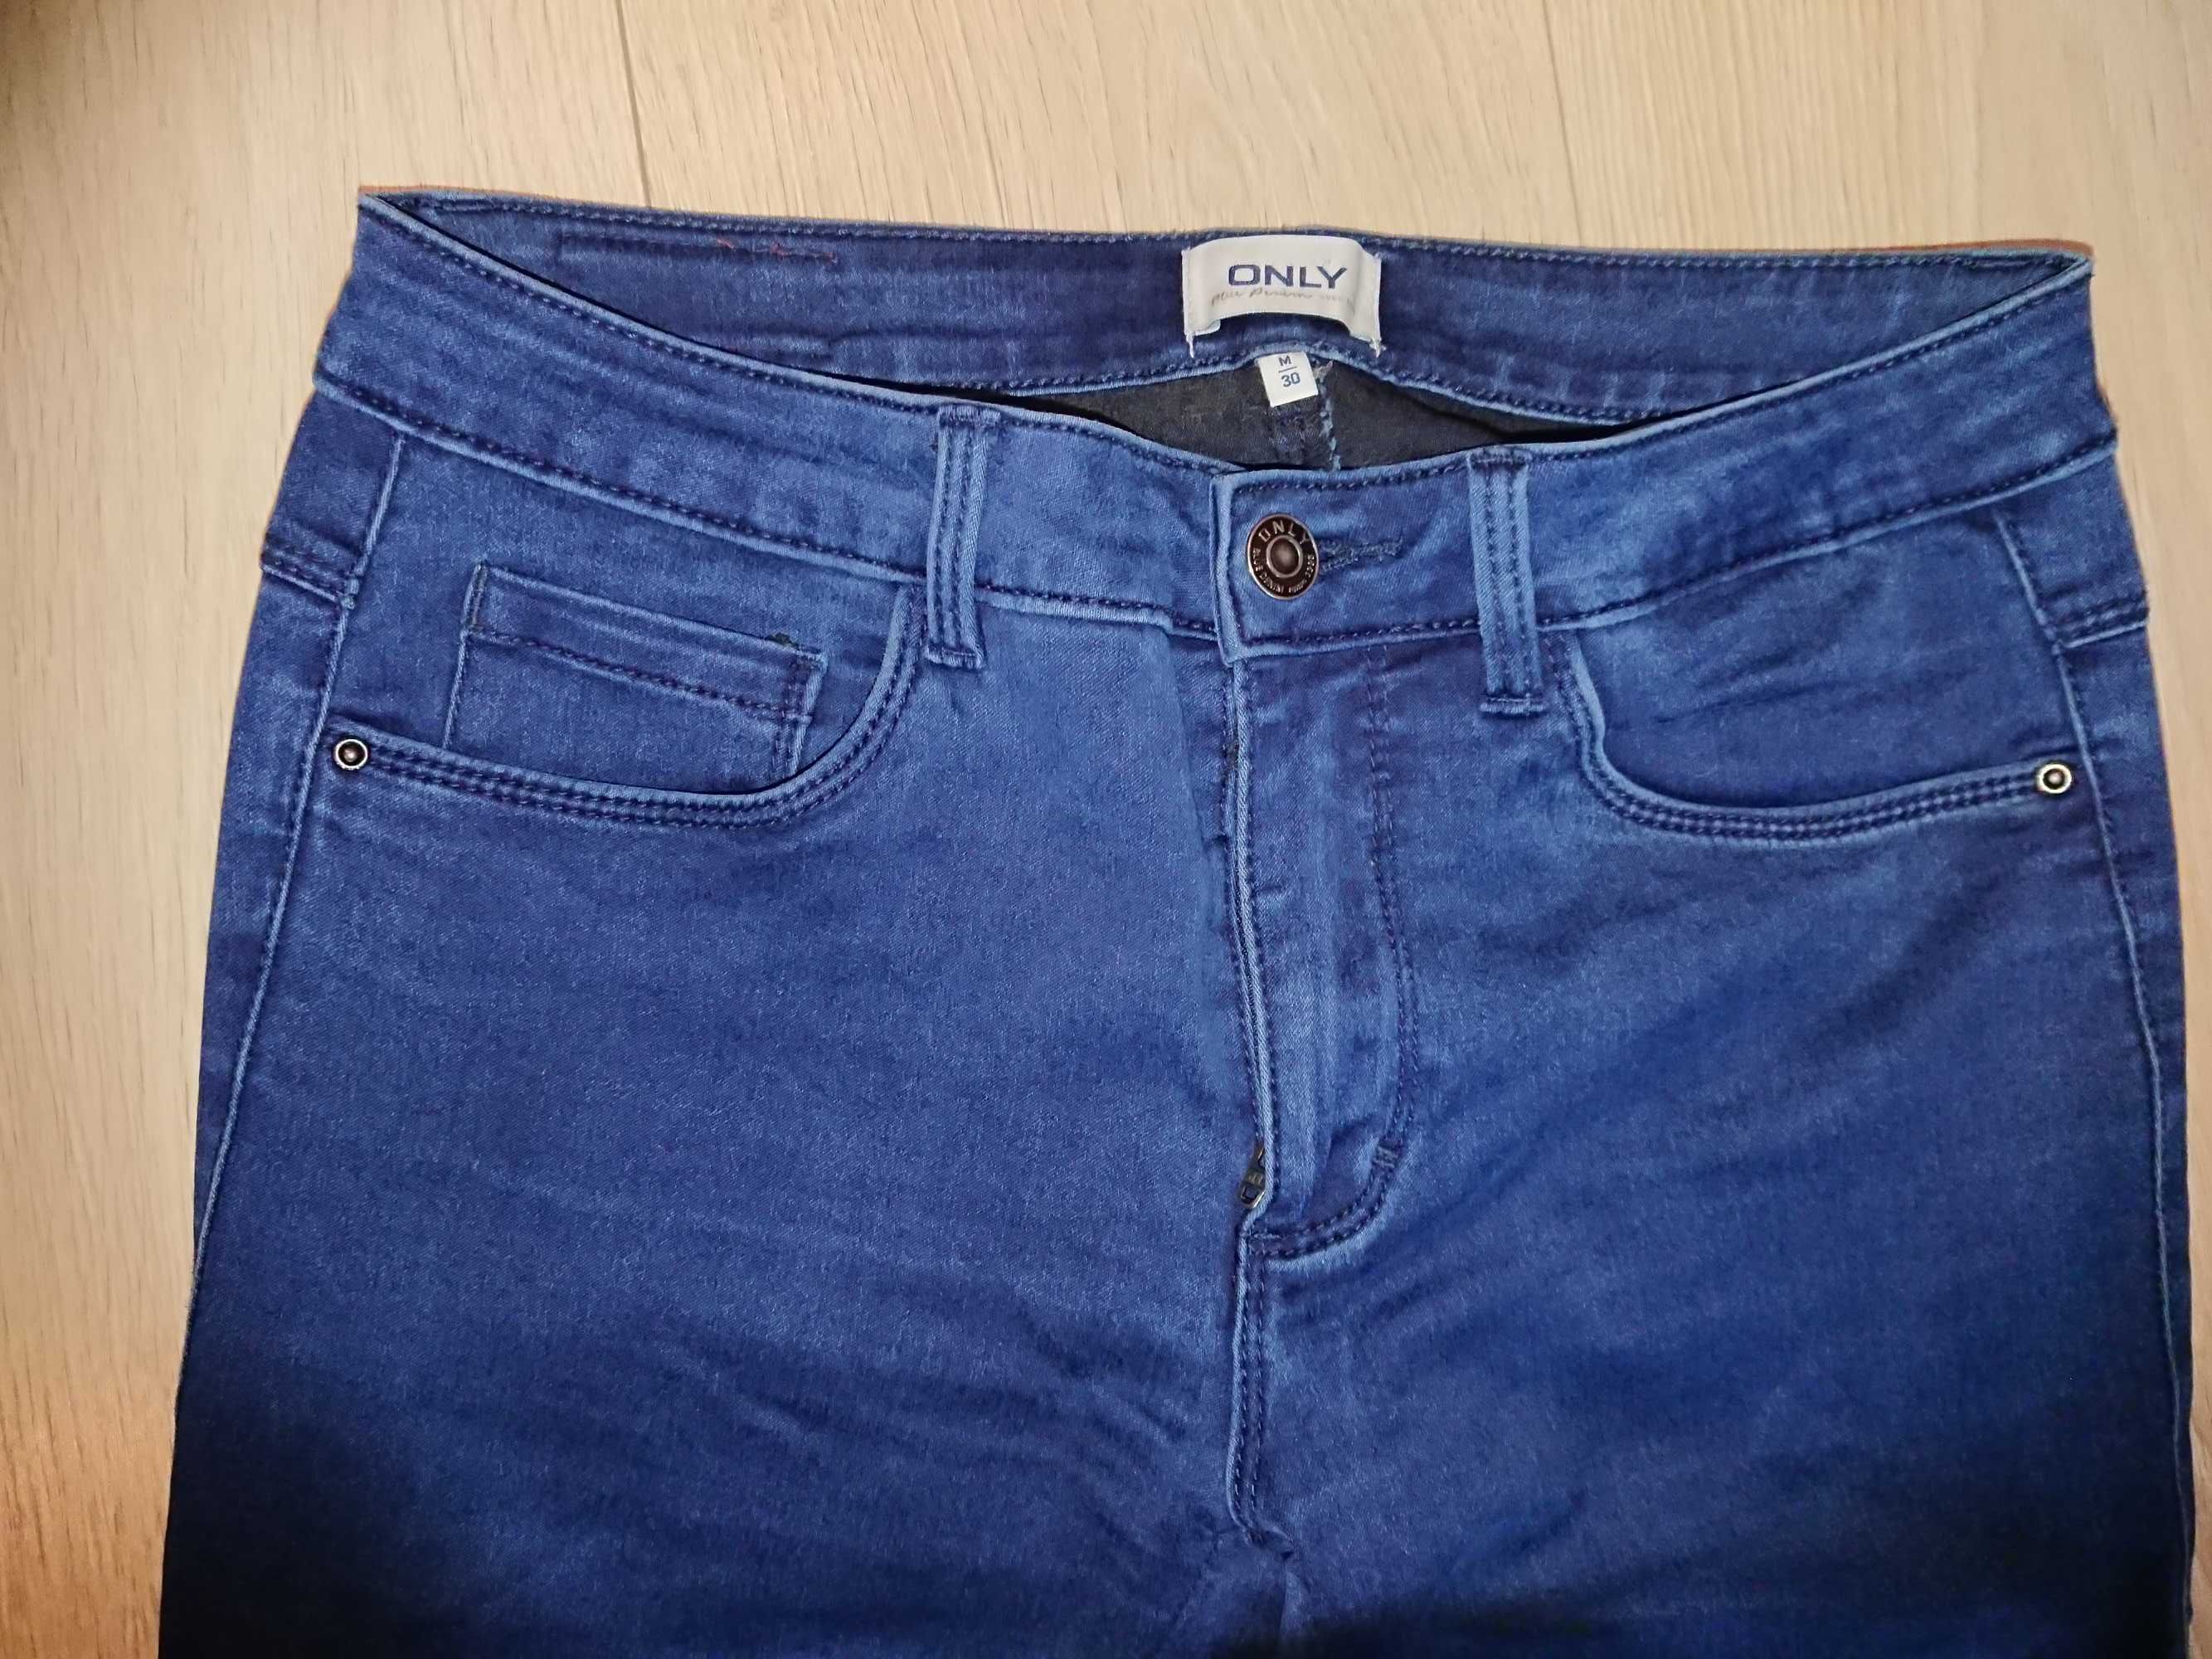 Spodnie jeansy only rozmiar 38 m